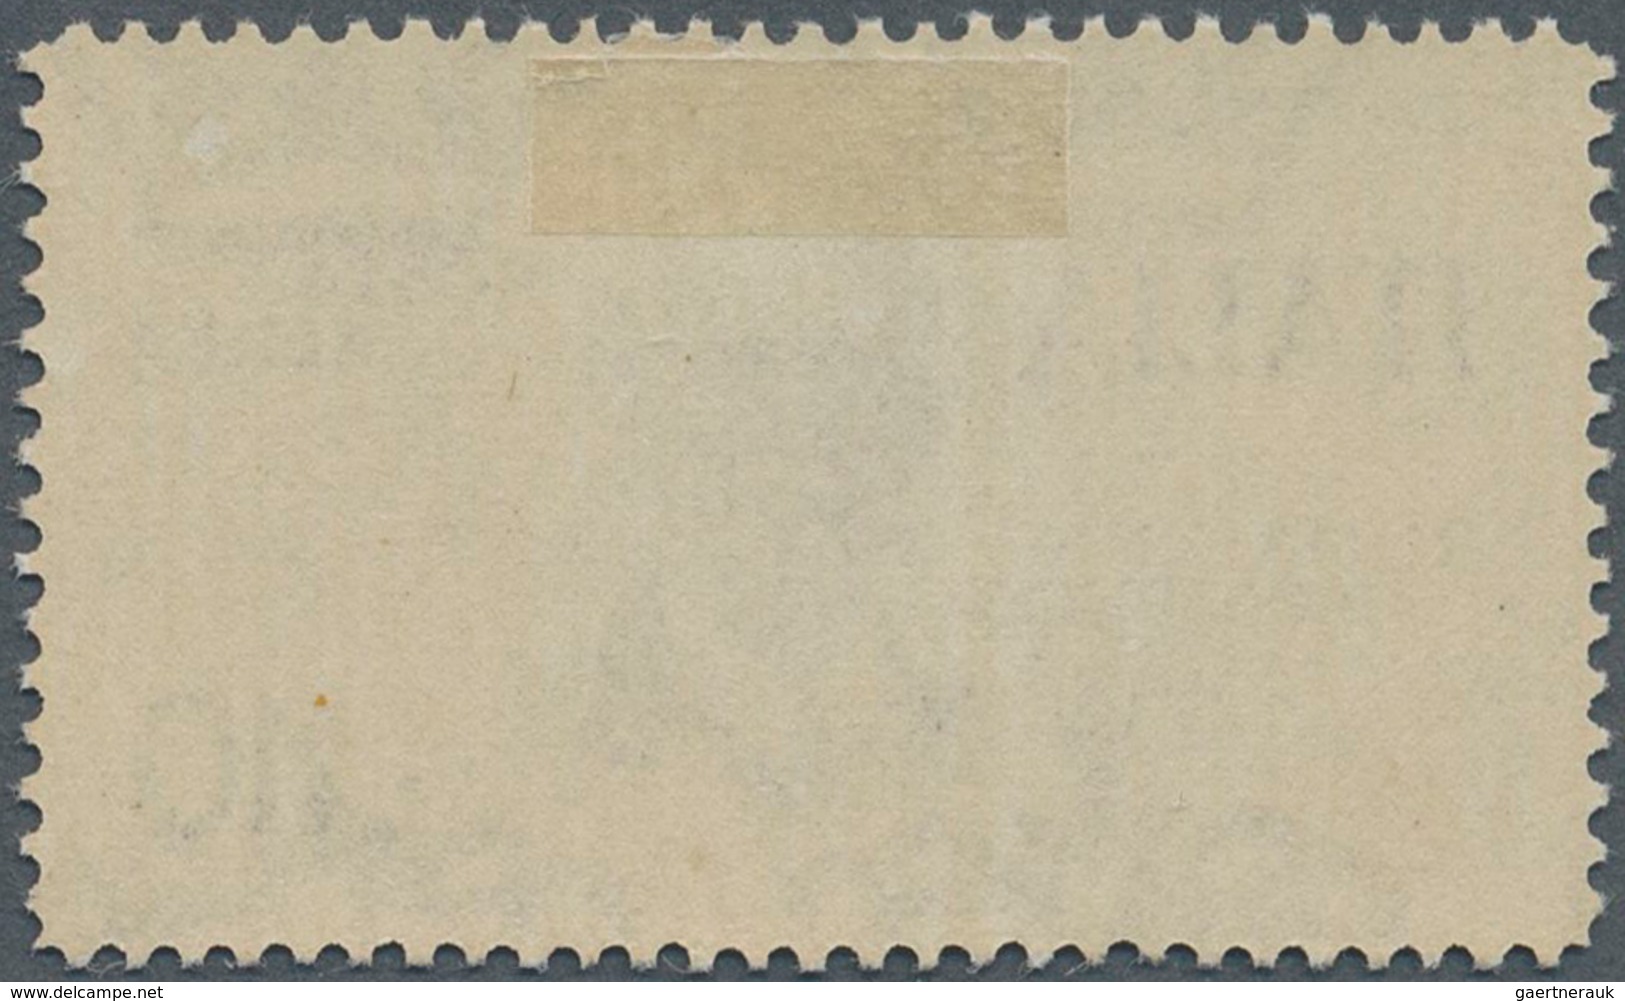 Italien - Dienstmarken: 1934, Mogadishu Flight, 10l. Bluish Grey, Mint Original Gum With Hinge Remna - Officials